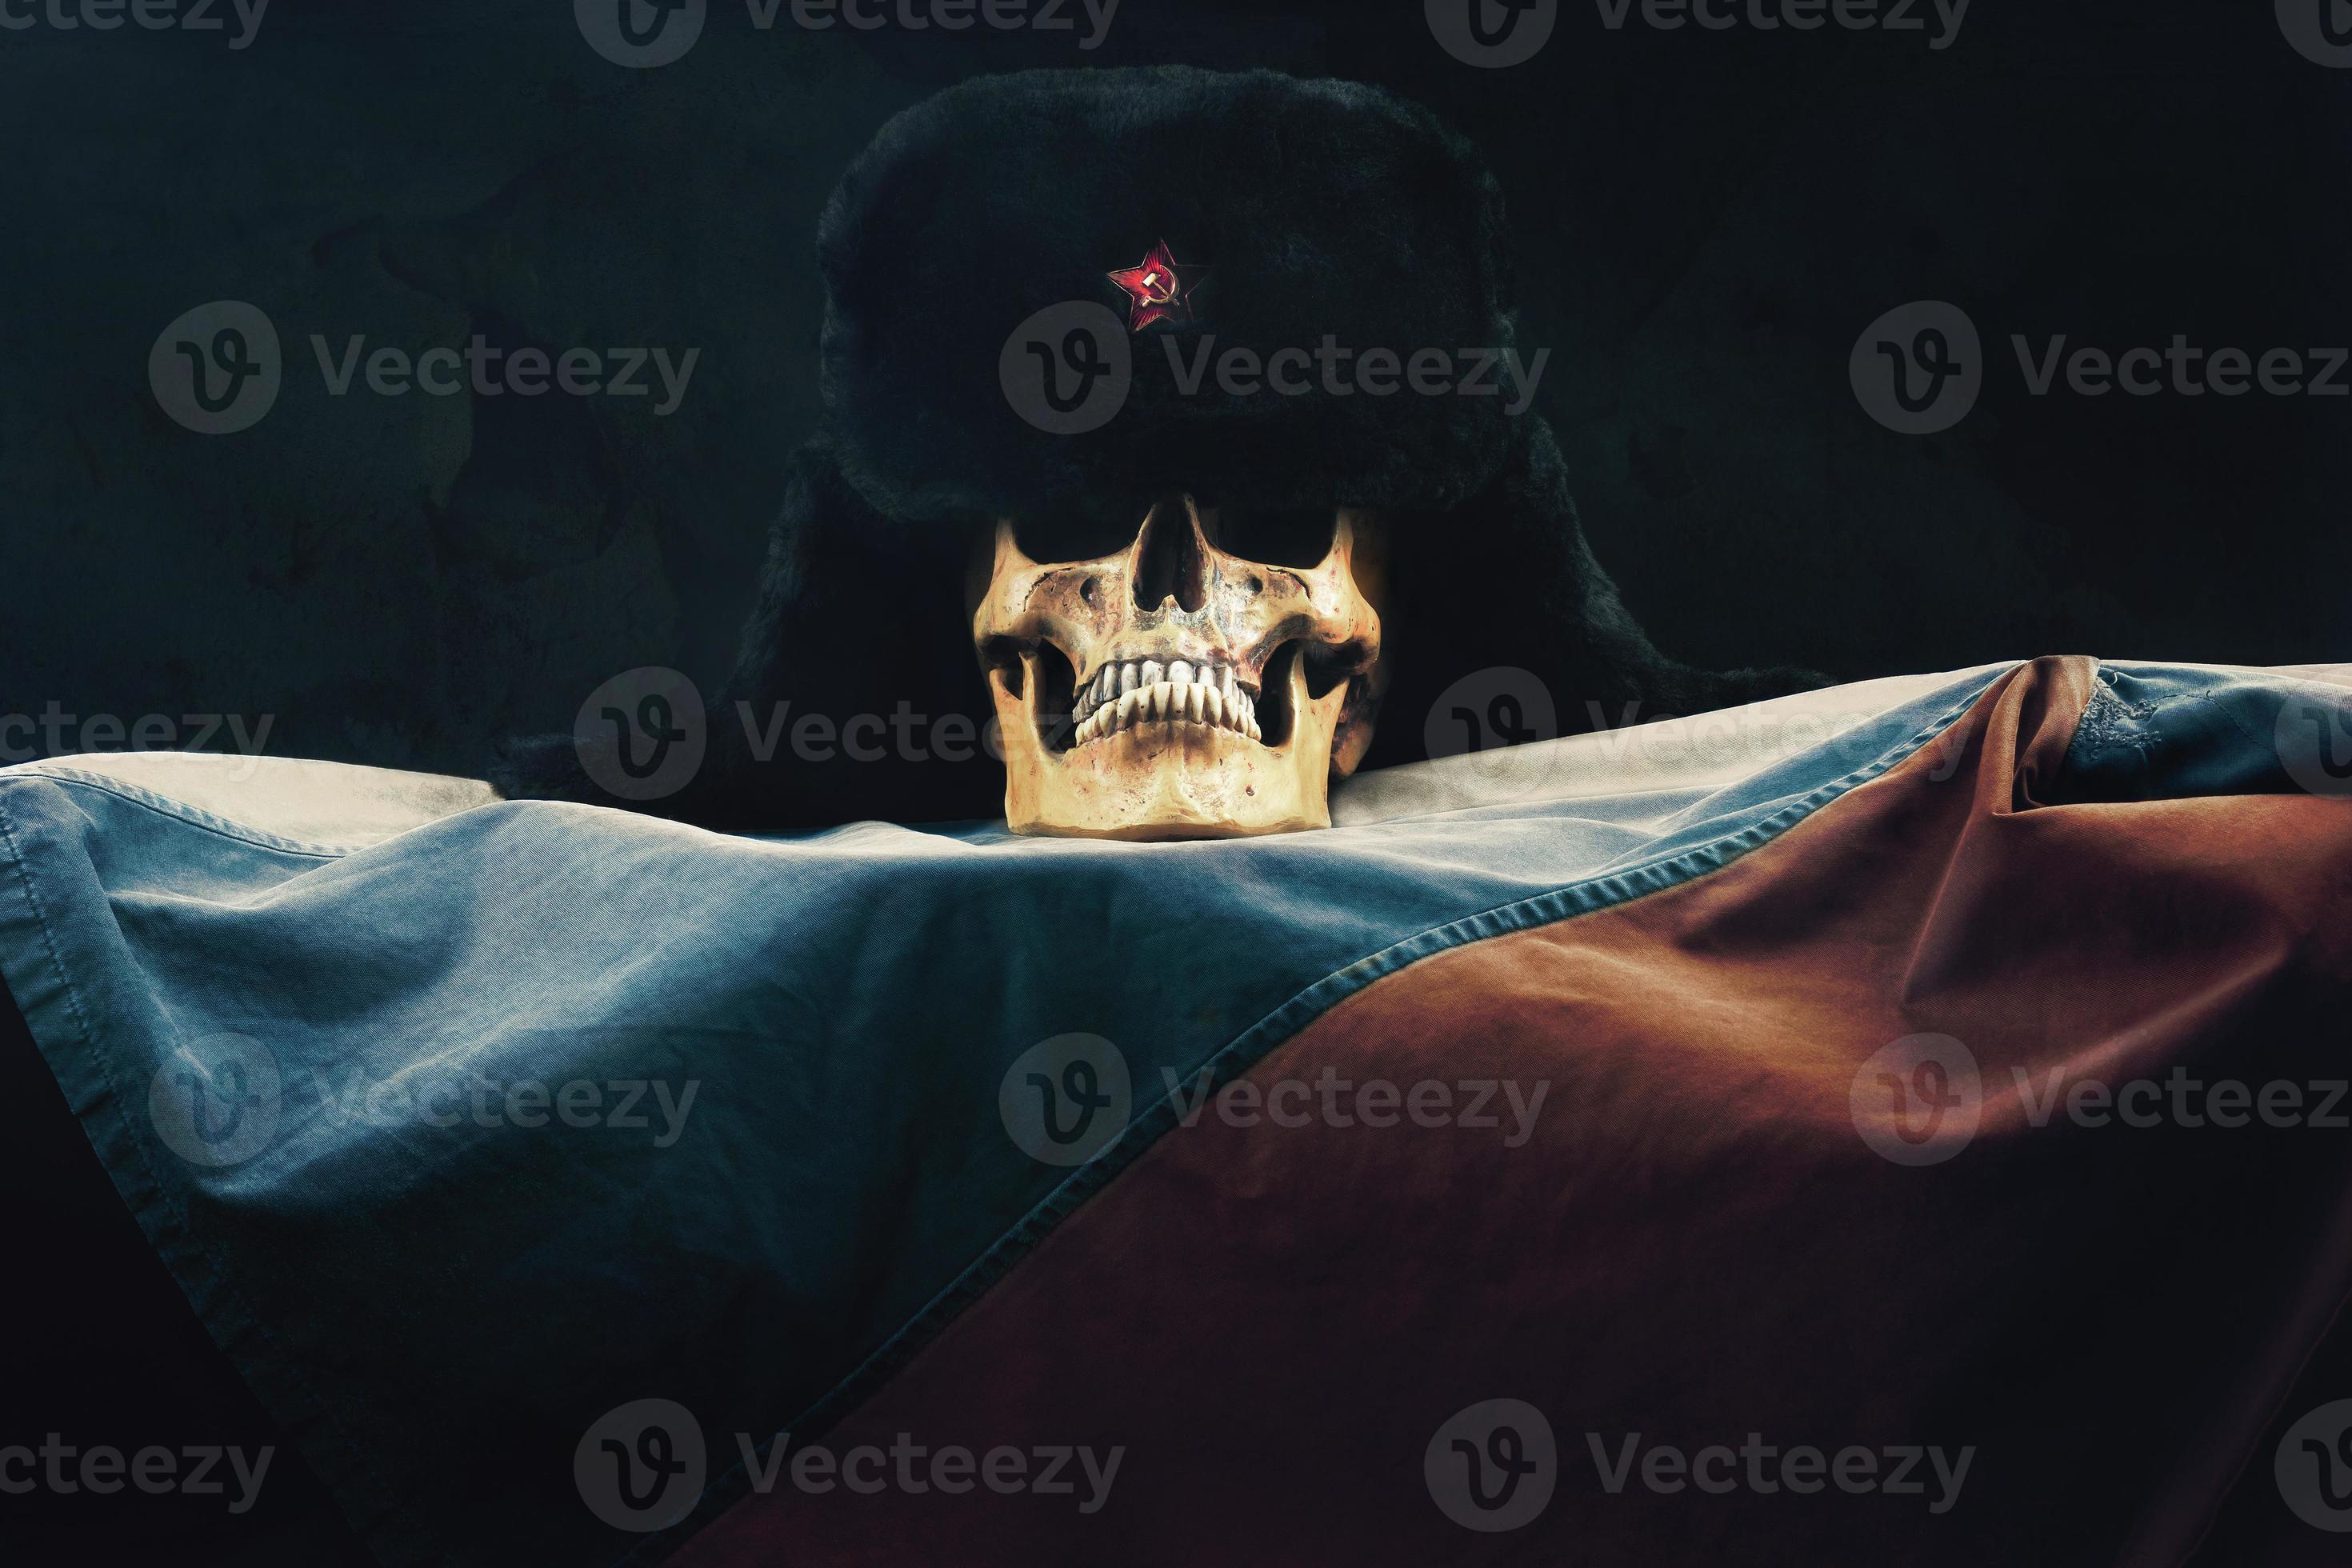 caveira com bandeira da Federação Russa e velho russo uschanka